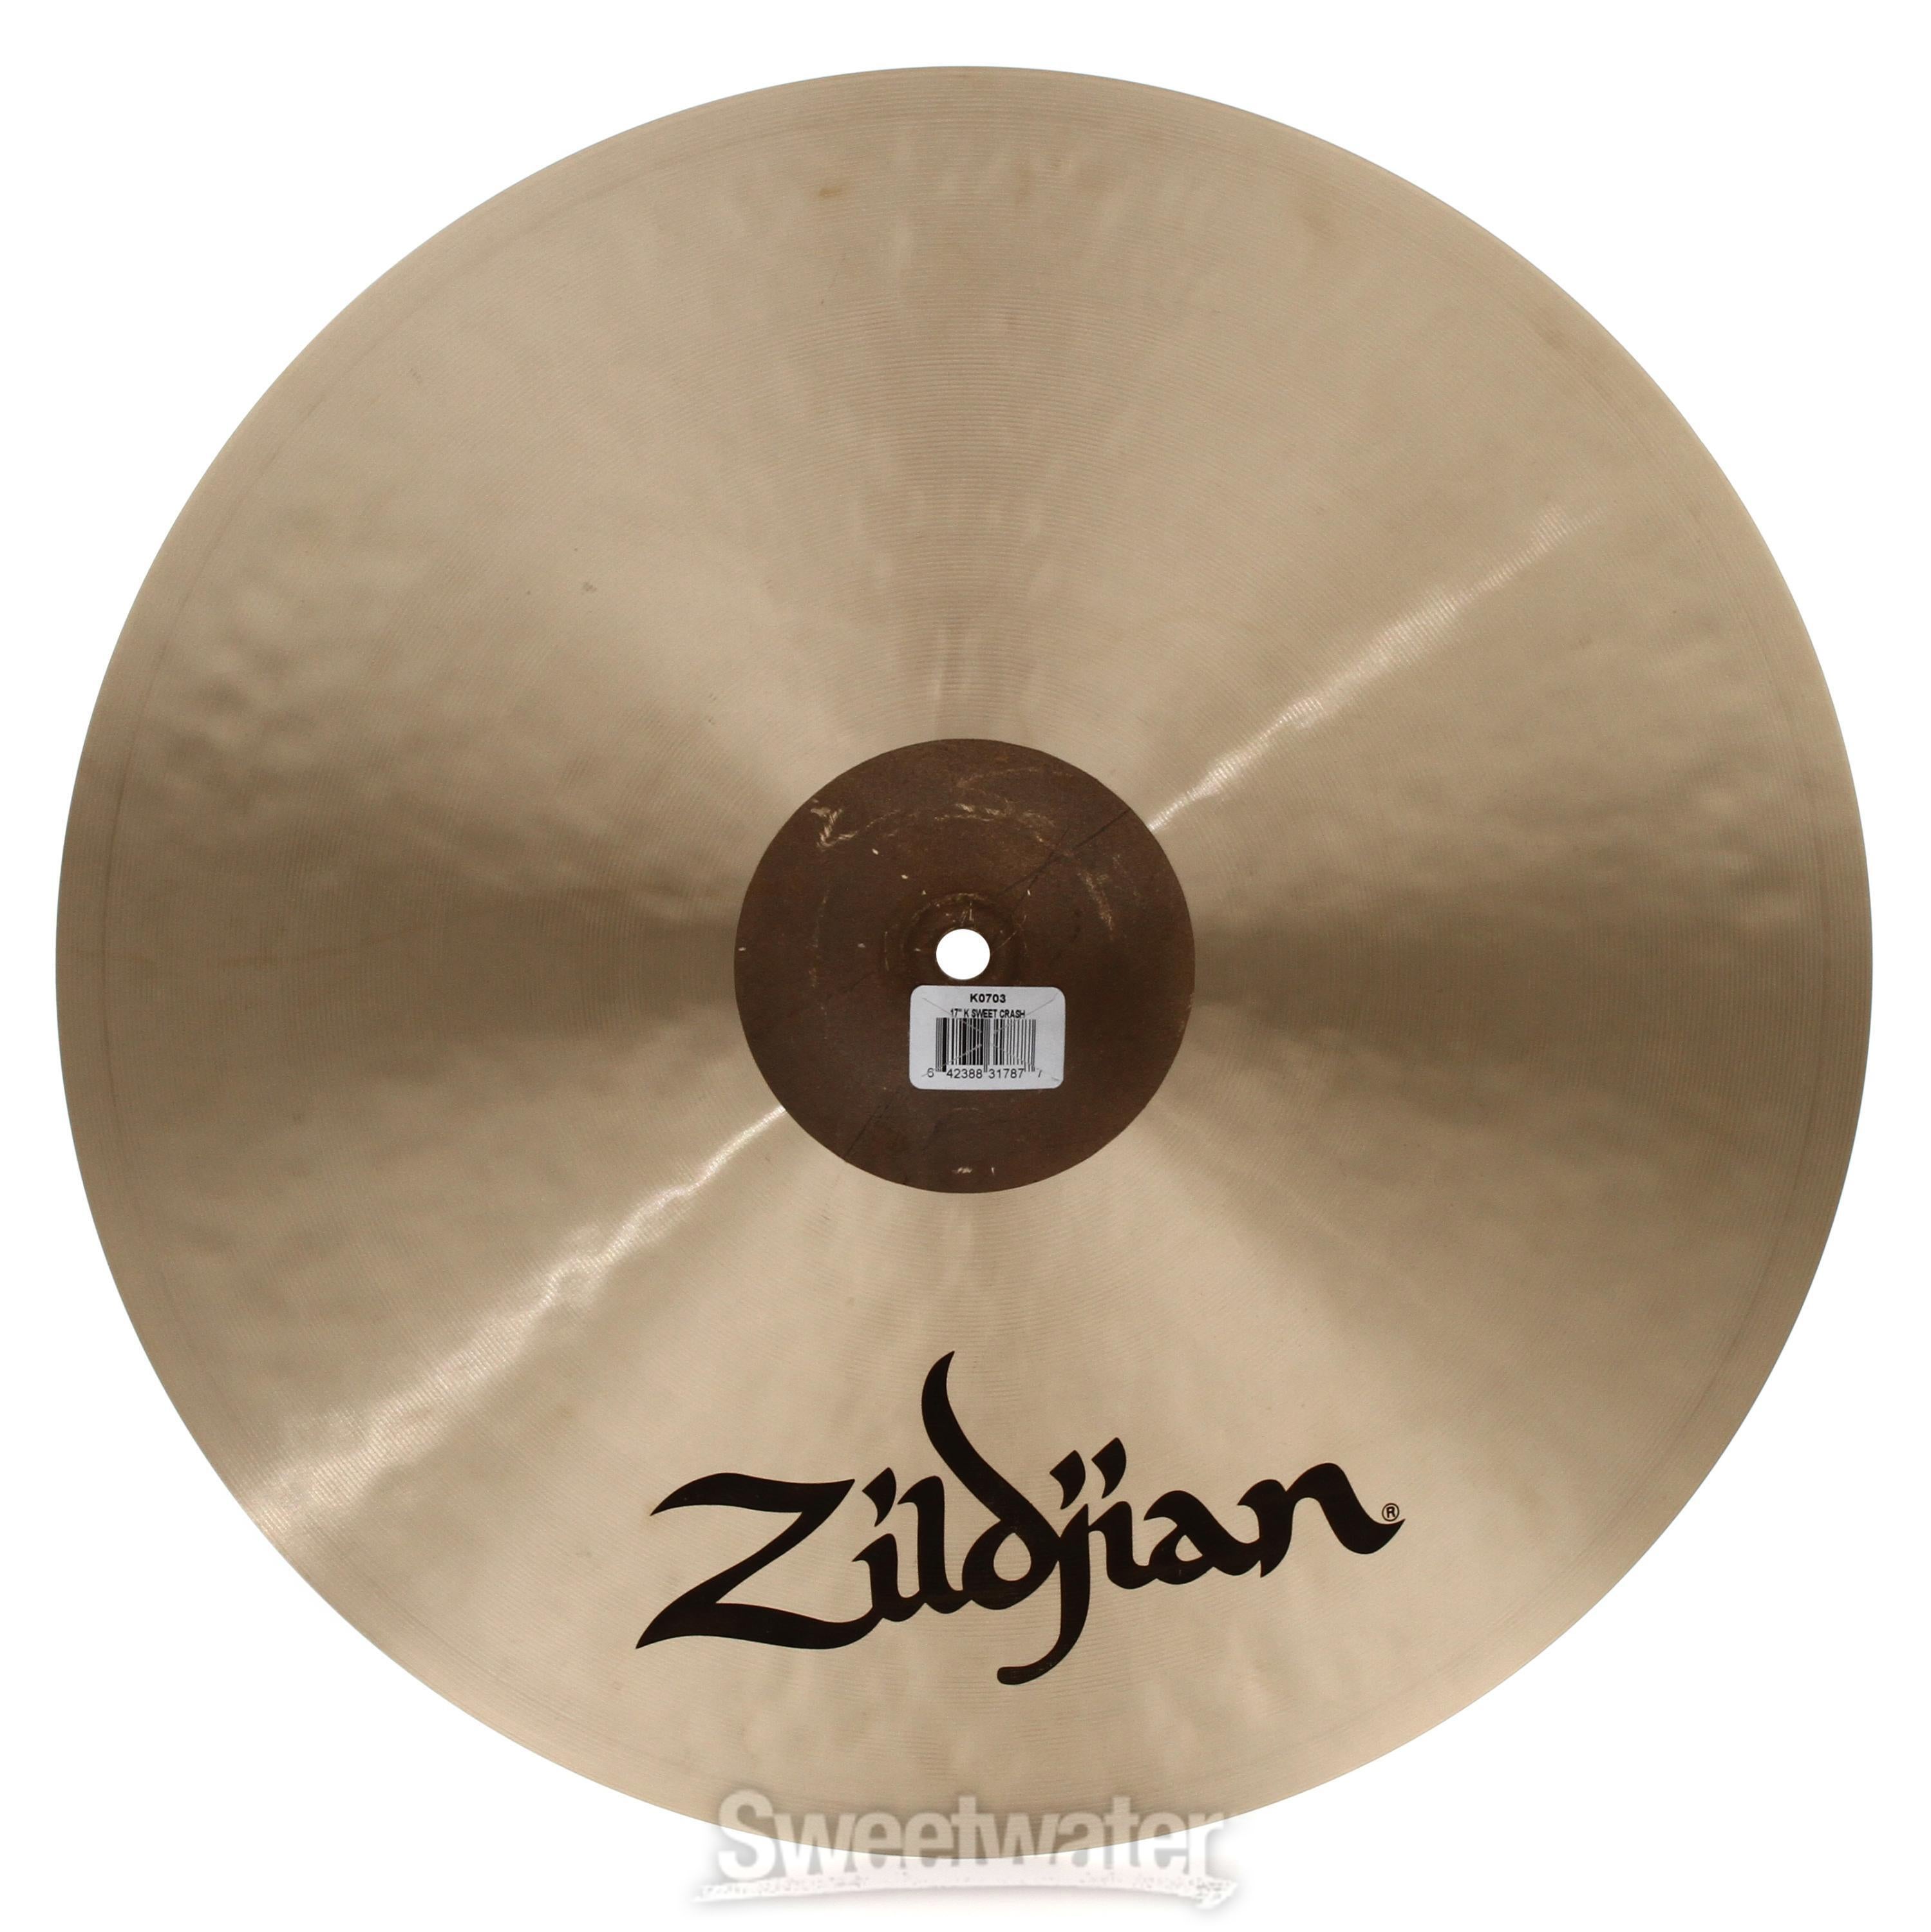 Zildjian 17 inch K Zildjian Sweet Crash Cymbal | Sweetwater